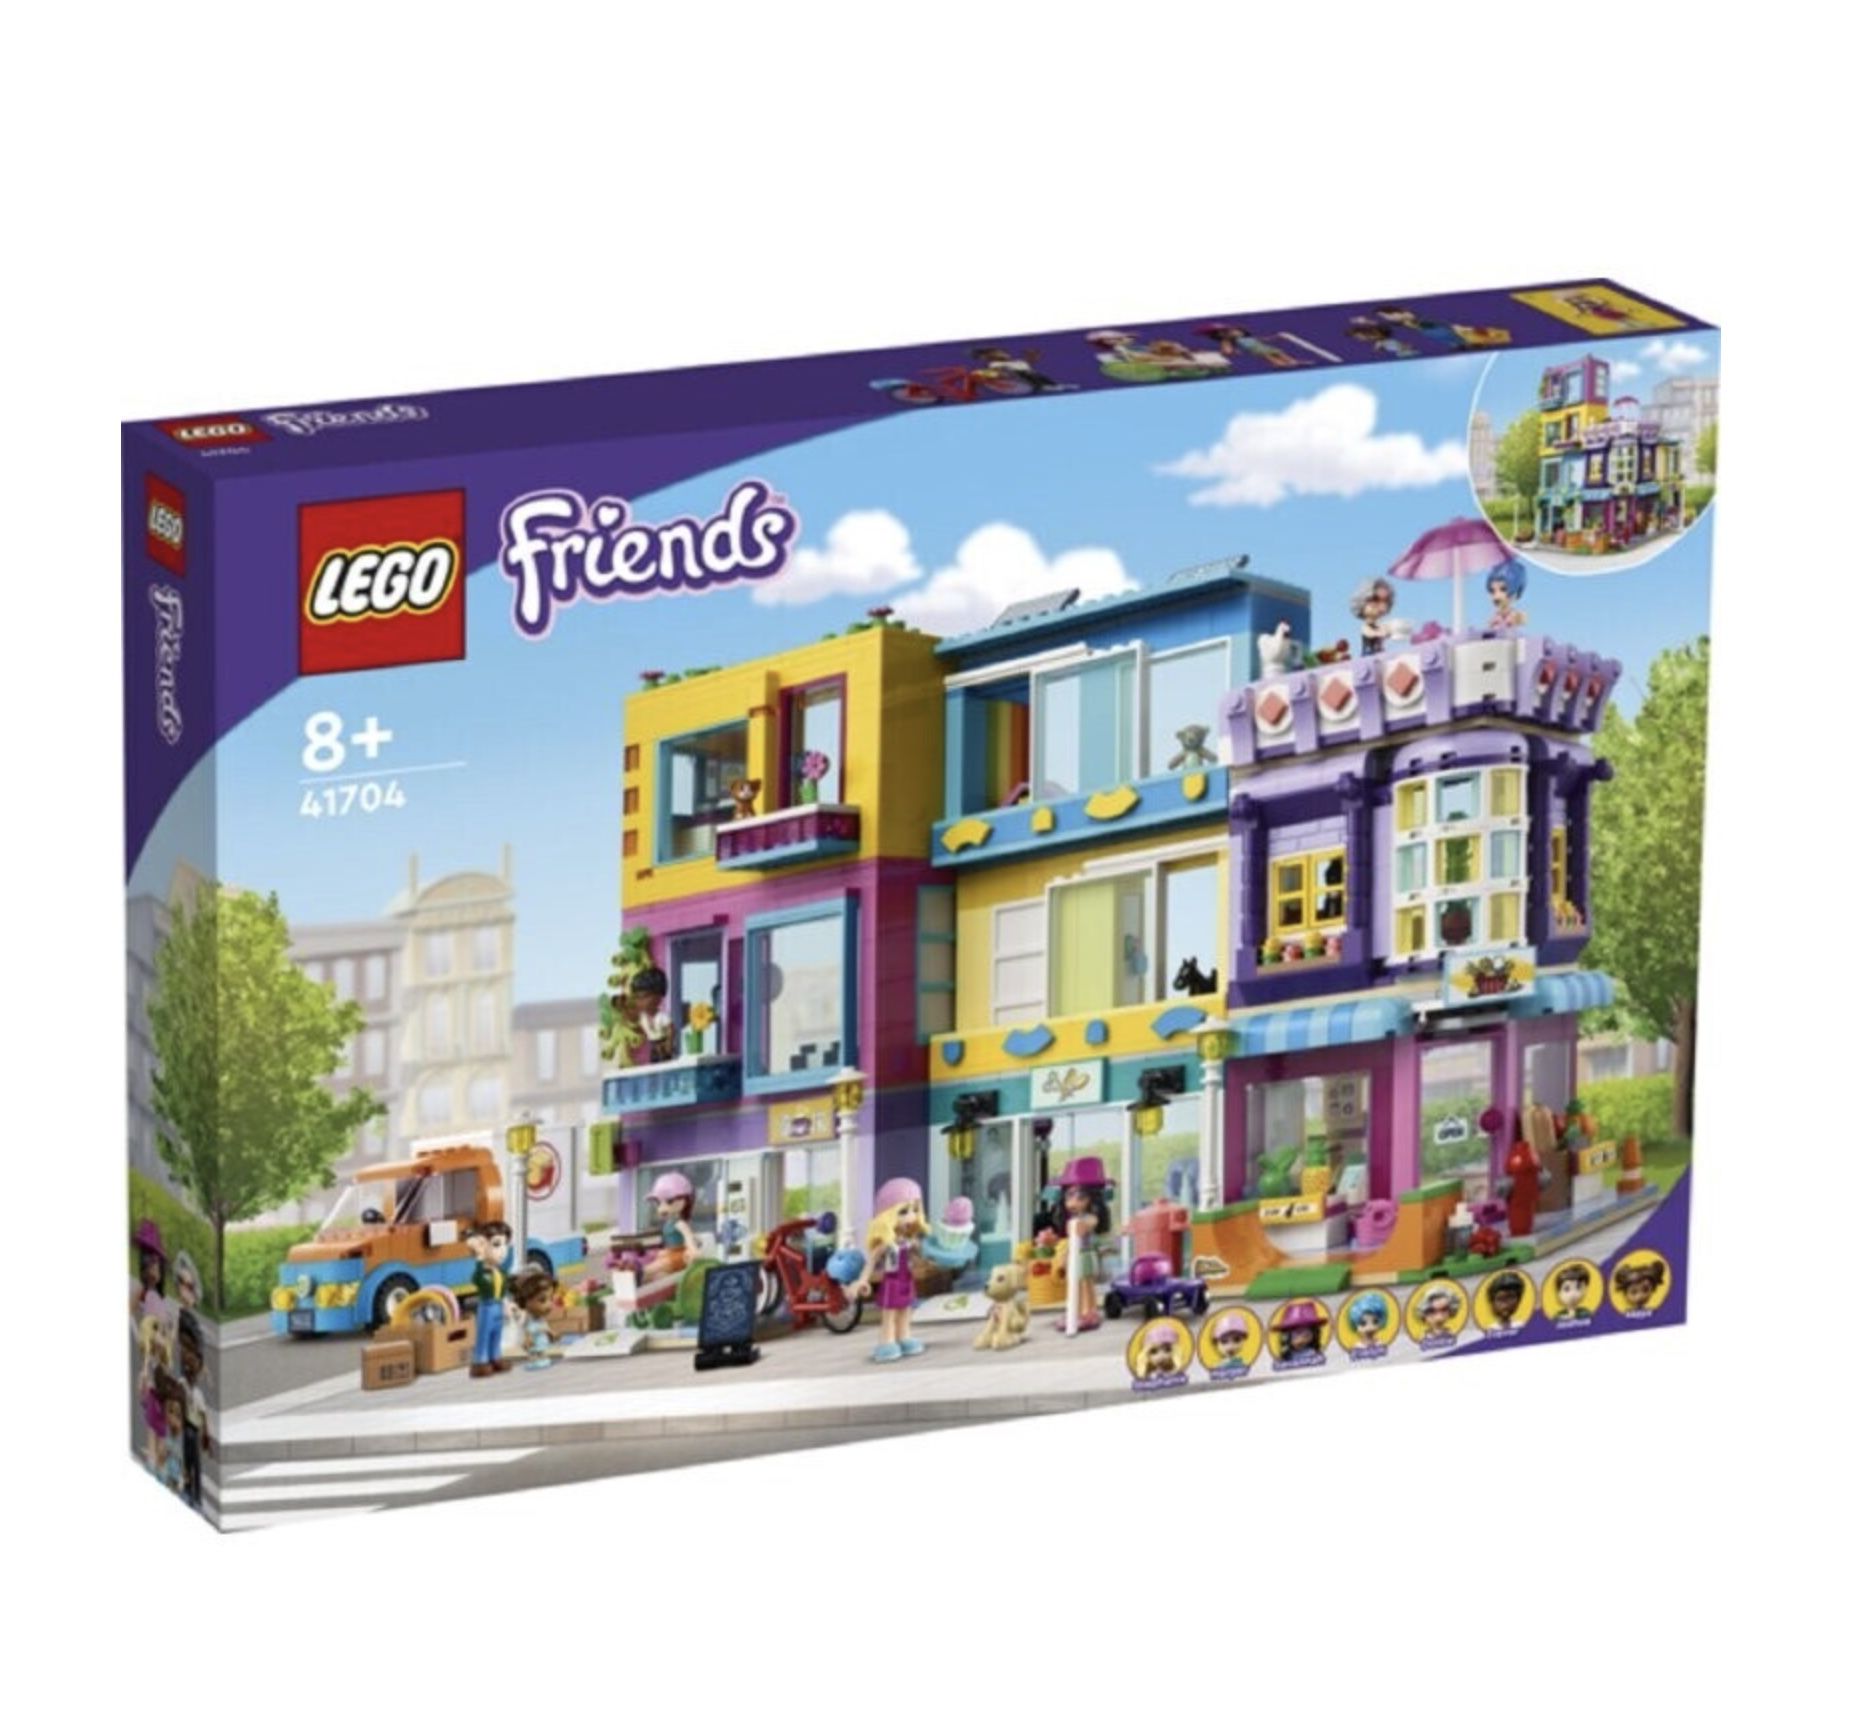 LEGO 41704 Friends Wohnblock für 93,99€ (statt 115€)